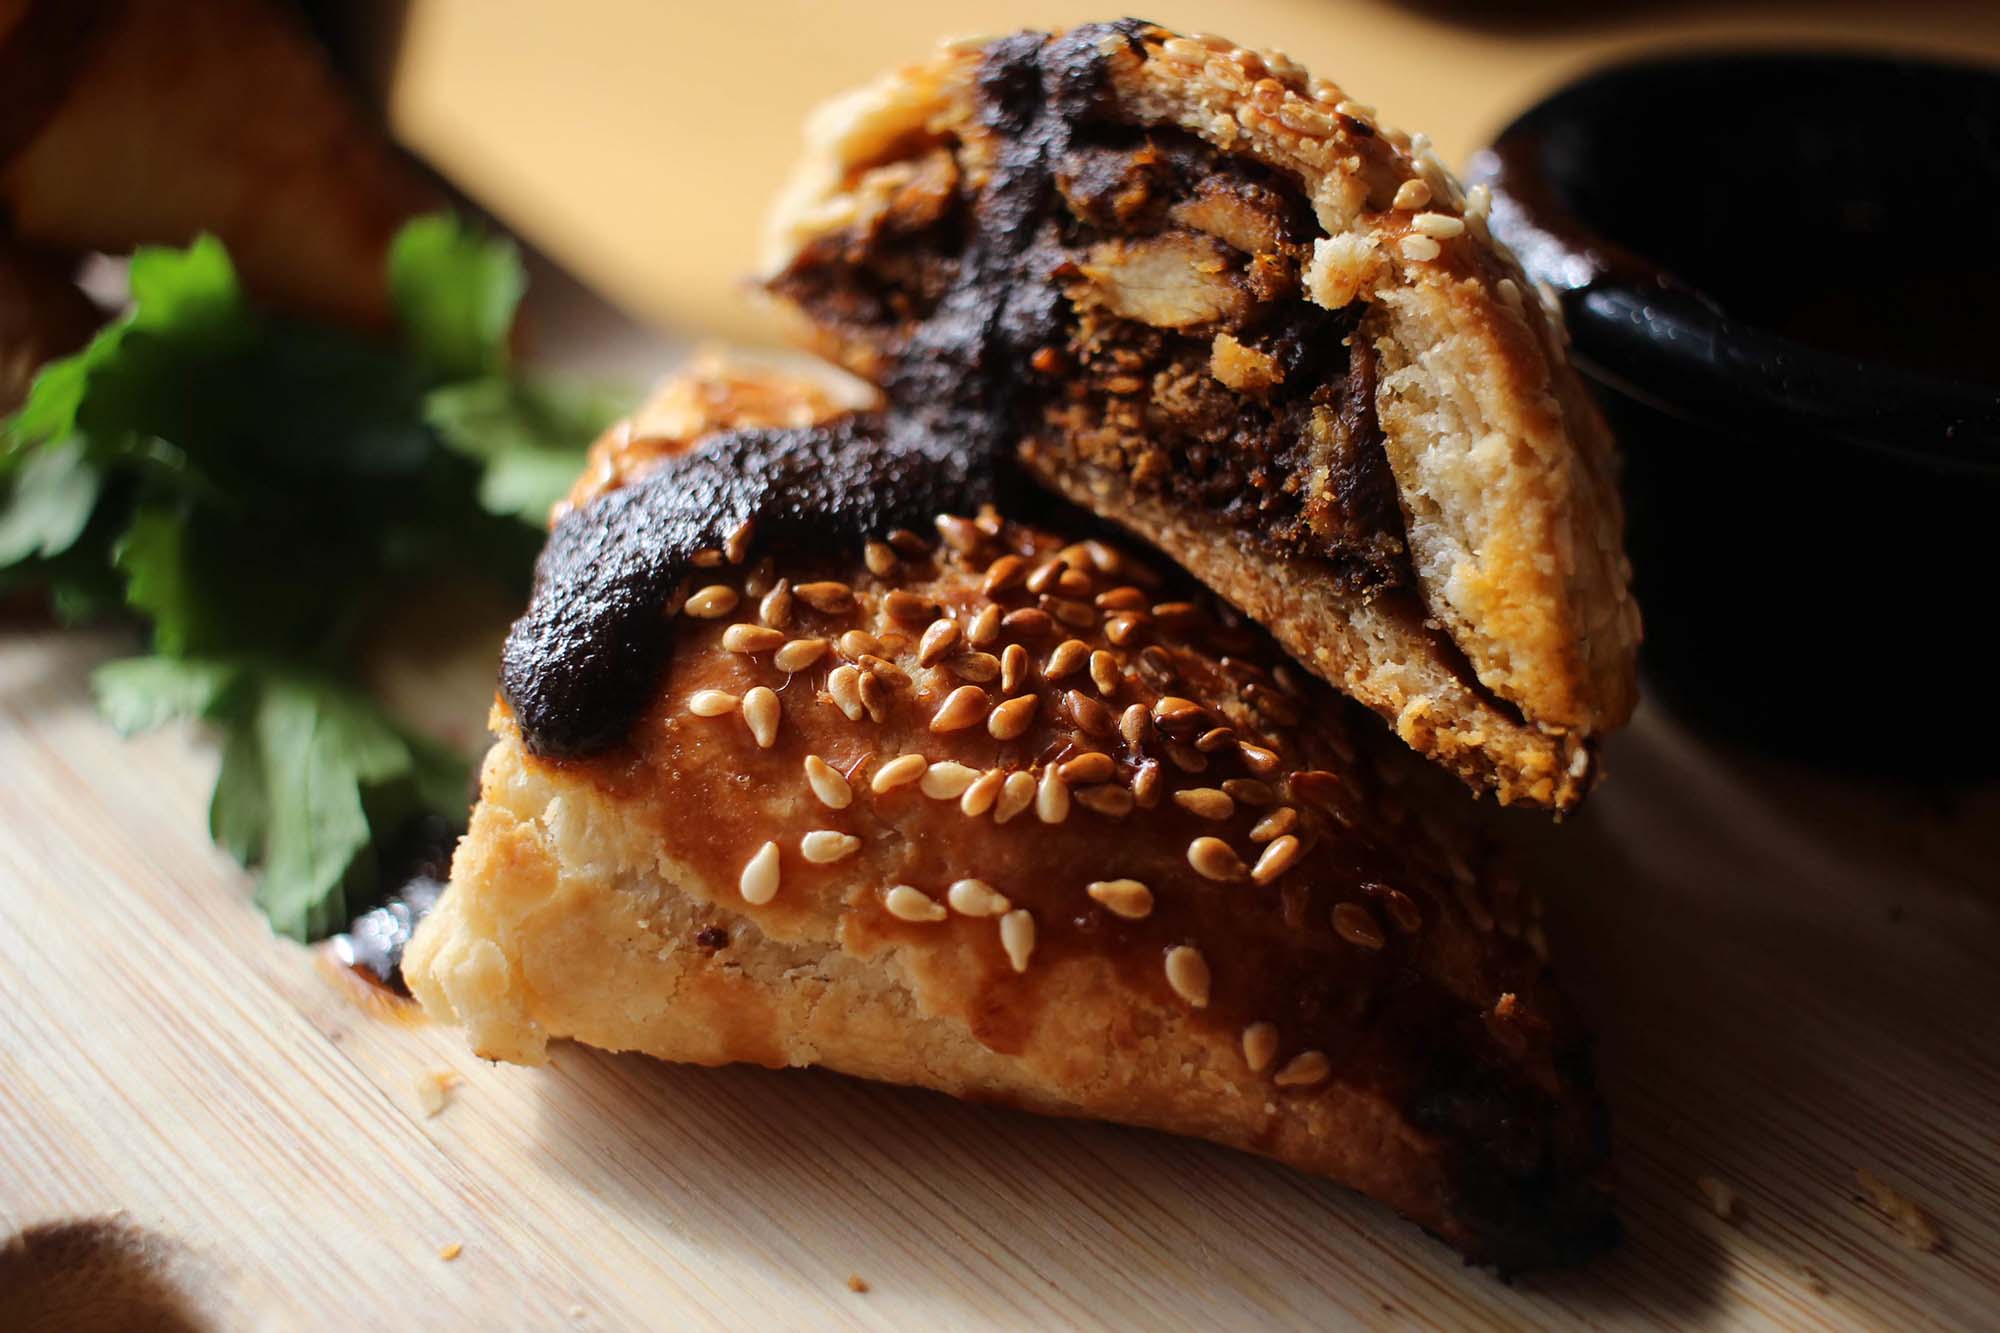 Close-up view of the chicken mole empanada, made using Garcia's grandmother's secret recipe.